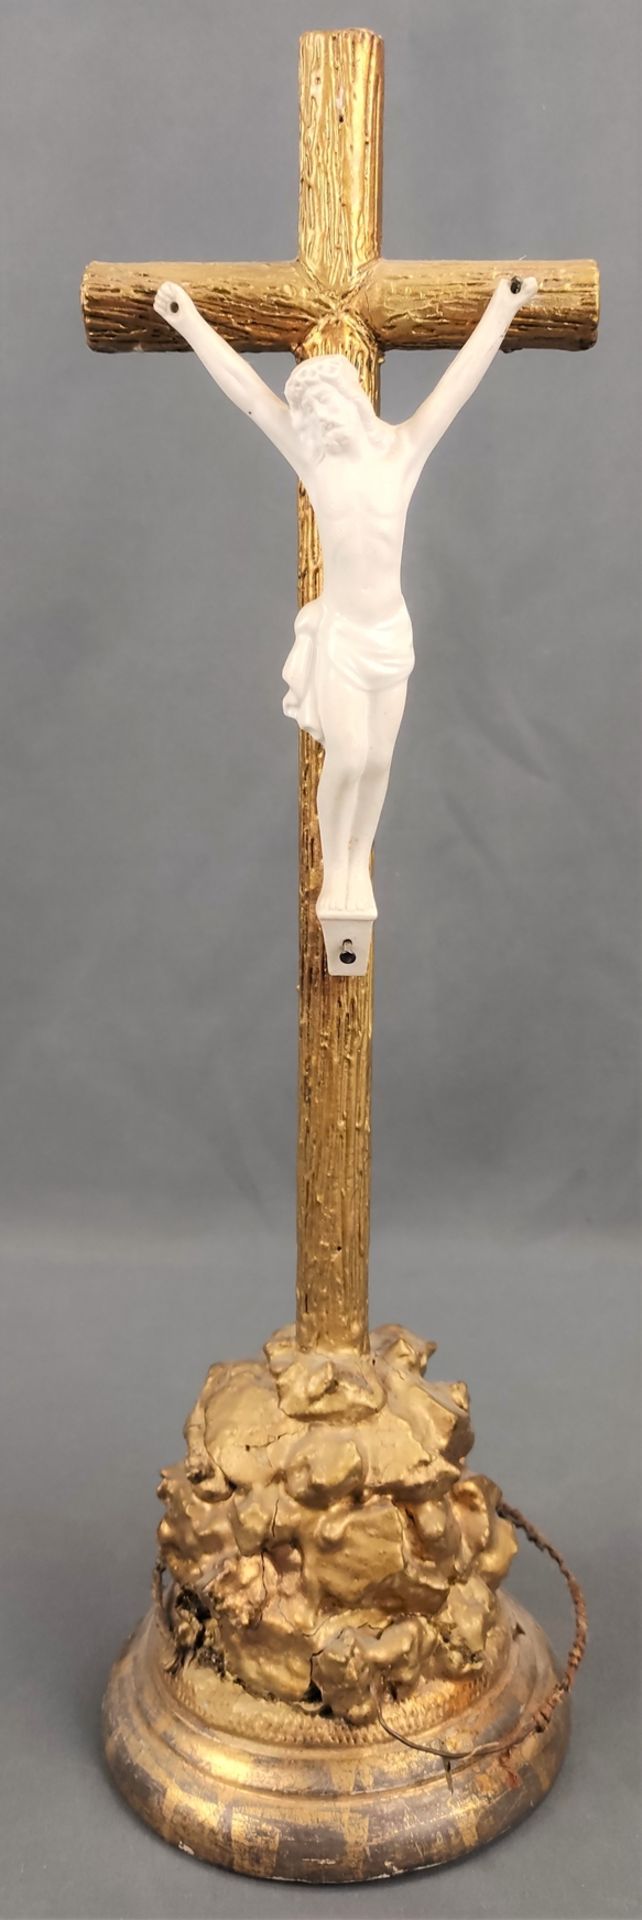 Rundholzkruzifix mit weißem Porzellan Corpus, Kruzifix mit felsenartigen Natursockel auf getreppter